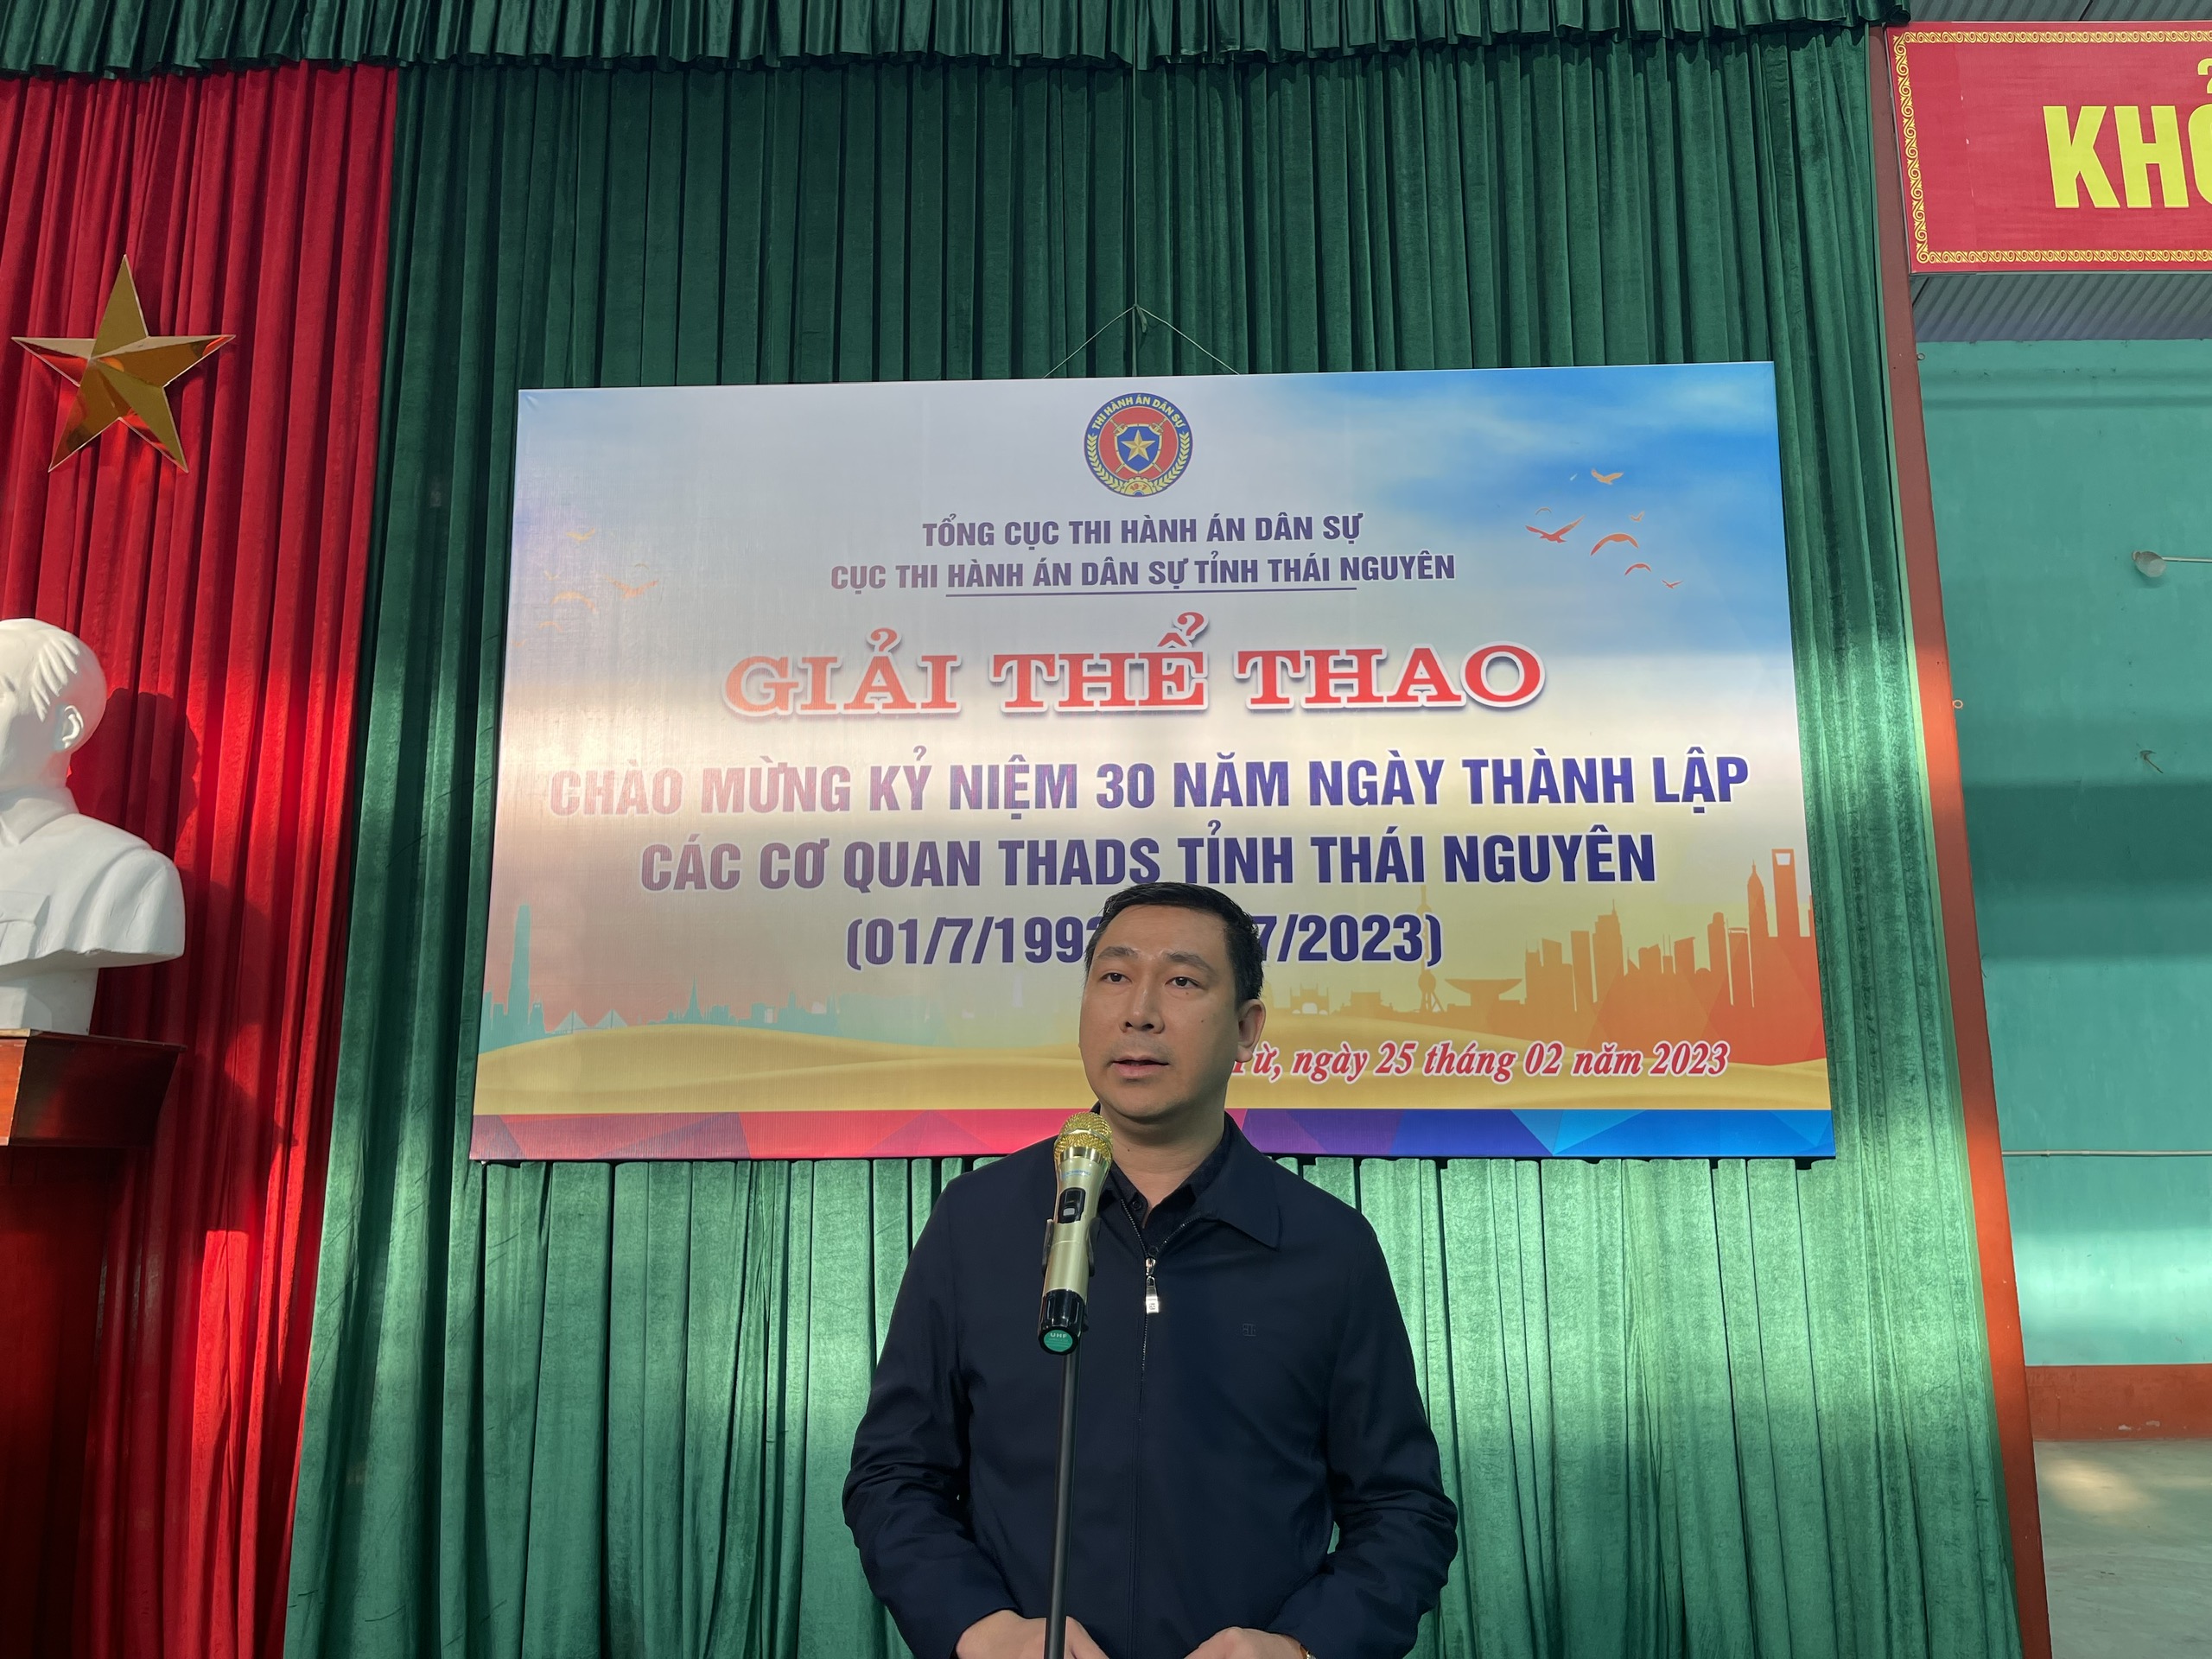 Thái Nguyên: tổ chức giải thể thao Chào mừng Kỷ niệm 30 năm Ngày thành lập các cơ quan THADS tỉnh